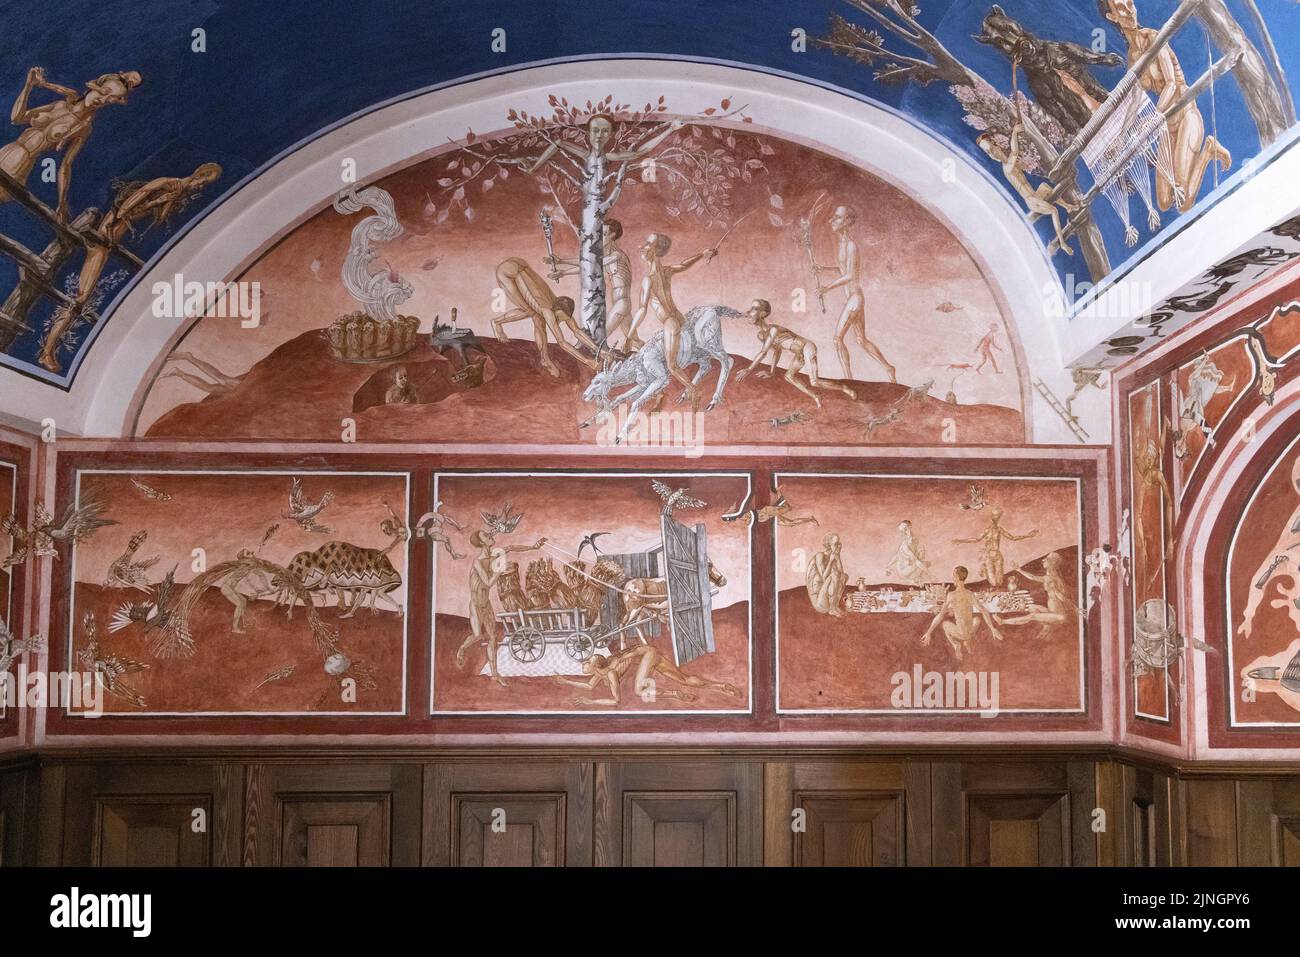 Peinture murale, 'les saisons de l'année' par Petras Repsys - de la mythologie Baltique et de l'histoire de la Baltique, Université de Vilnius, Vilnius Lituanie Europe Banque D'Images